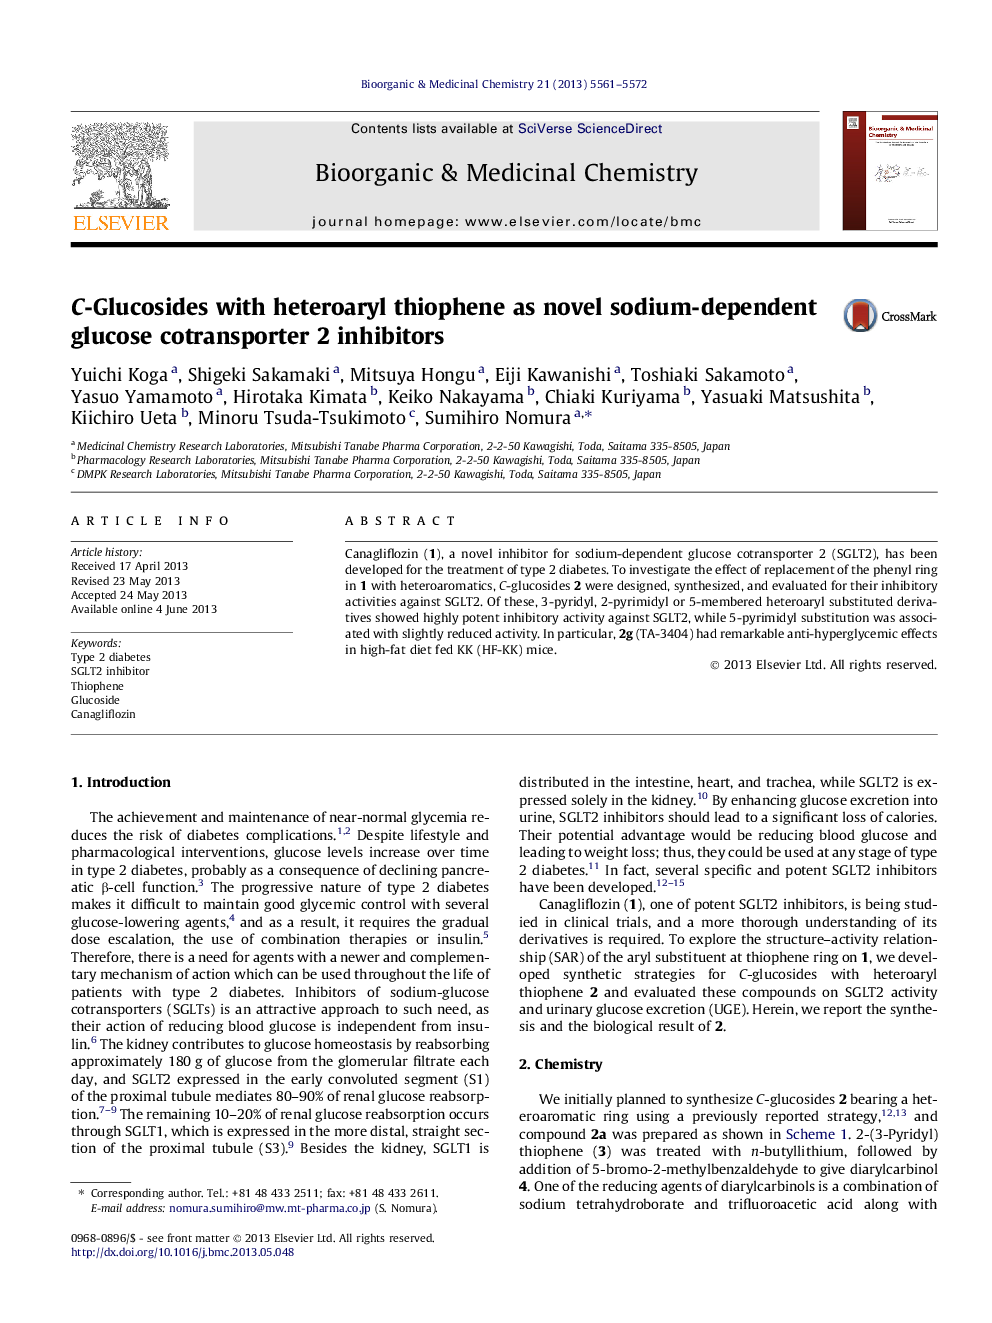 C-Glucosides with heteroaryl thiophene as novel sodium-dependent glucose cotransporter 2 inhibitors